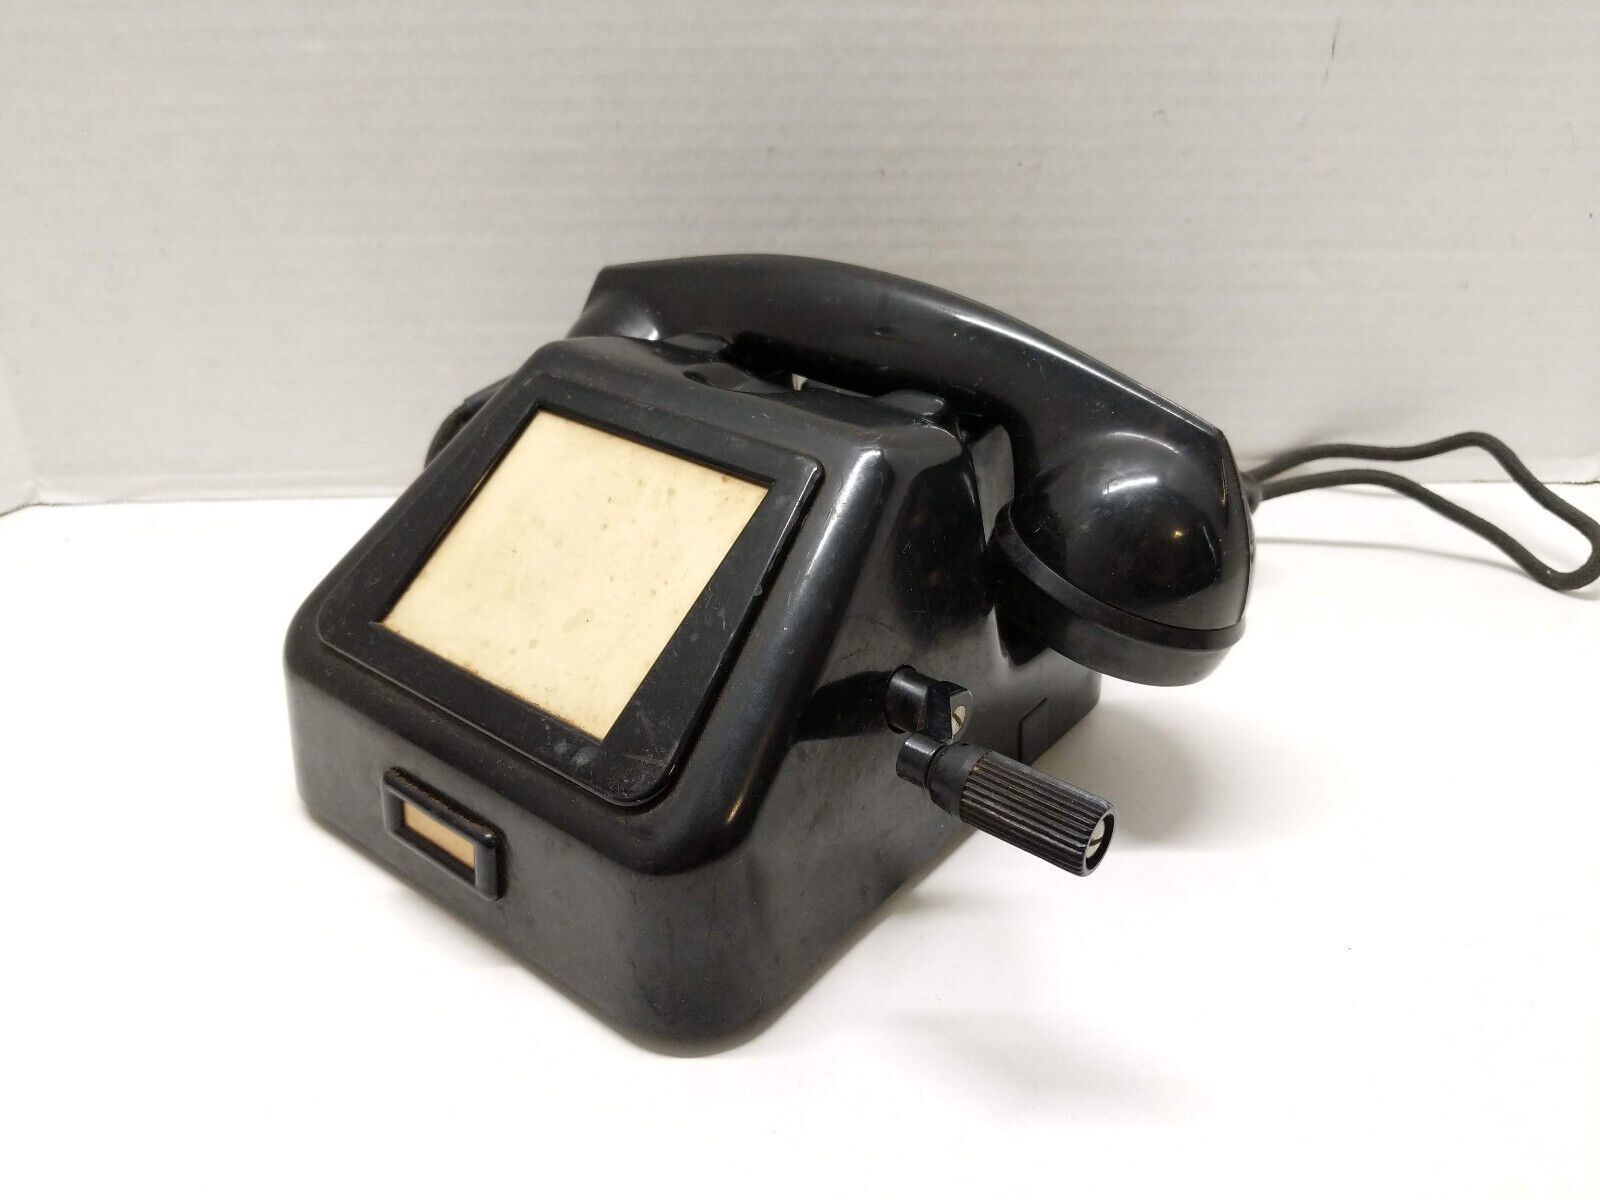 Vtg German Krone Non-Dial Crank Magneto Bakelite Desk Phone Telephone w/ Handset